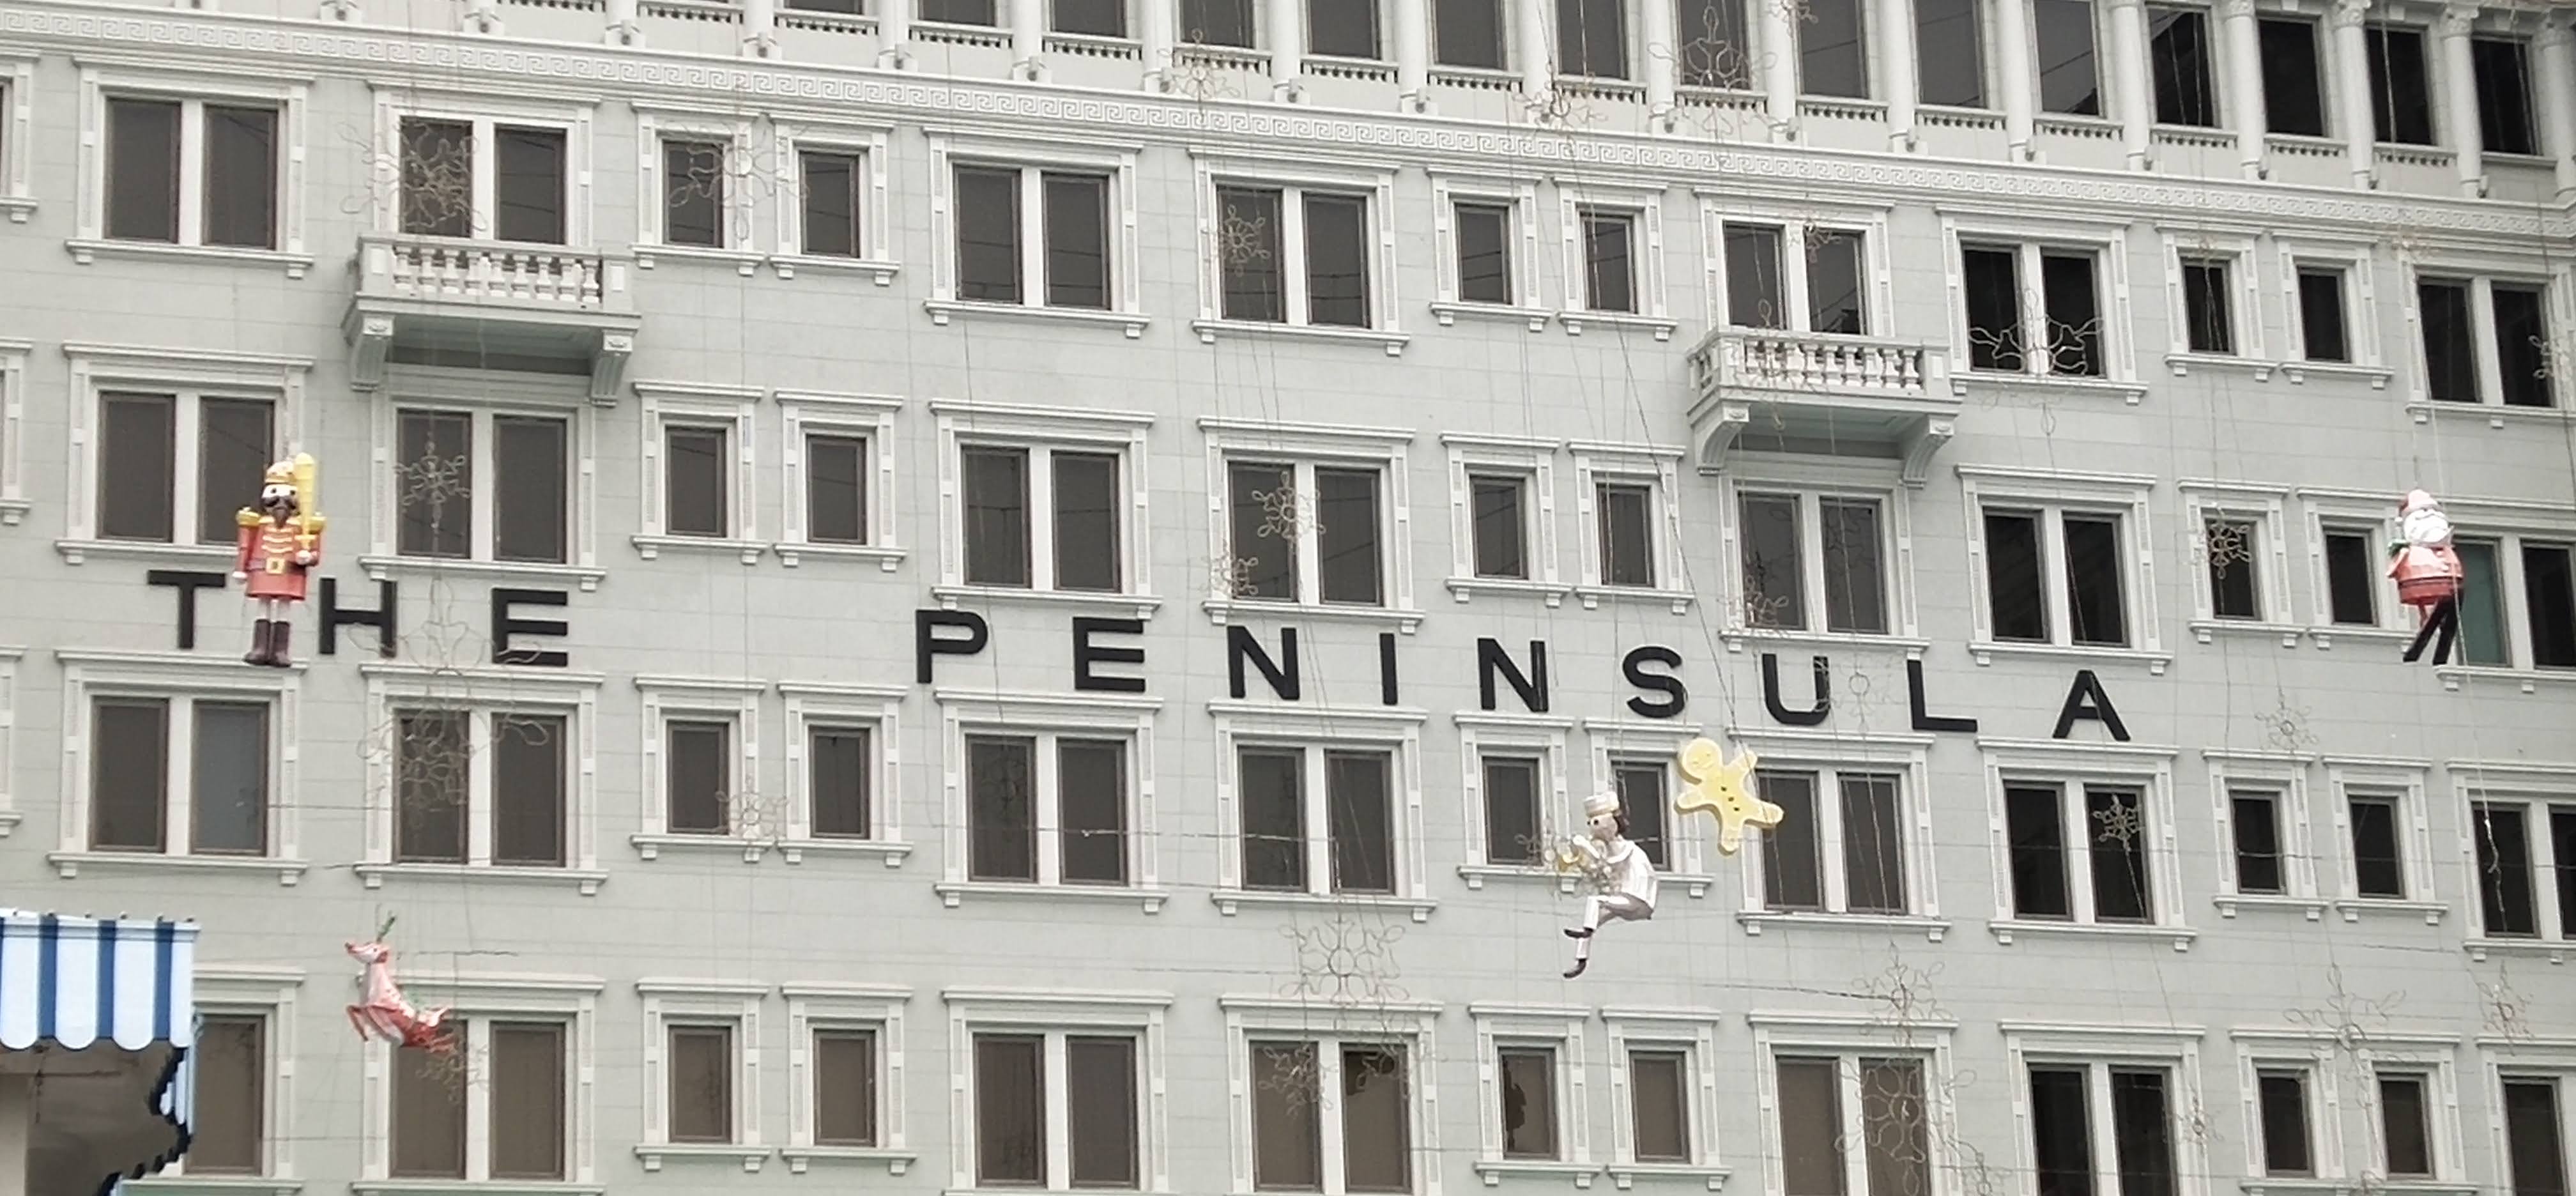 Peninsula Hotel in 2020